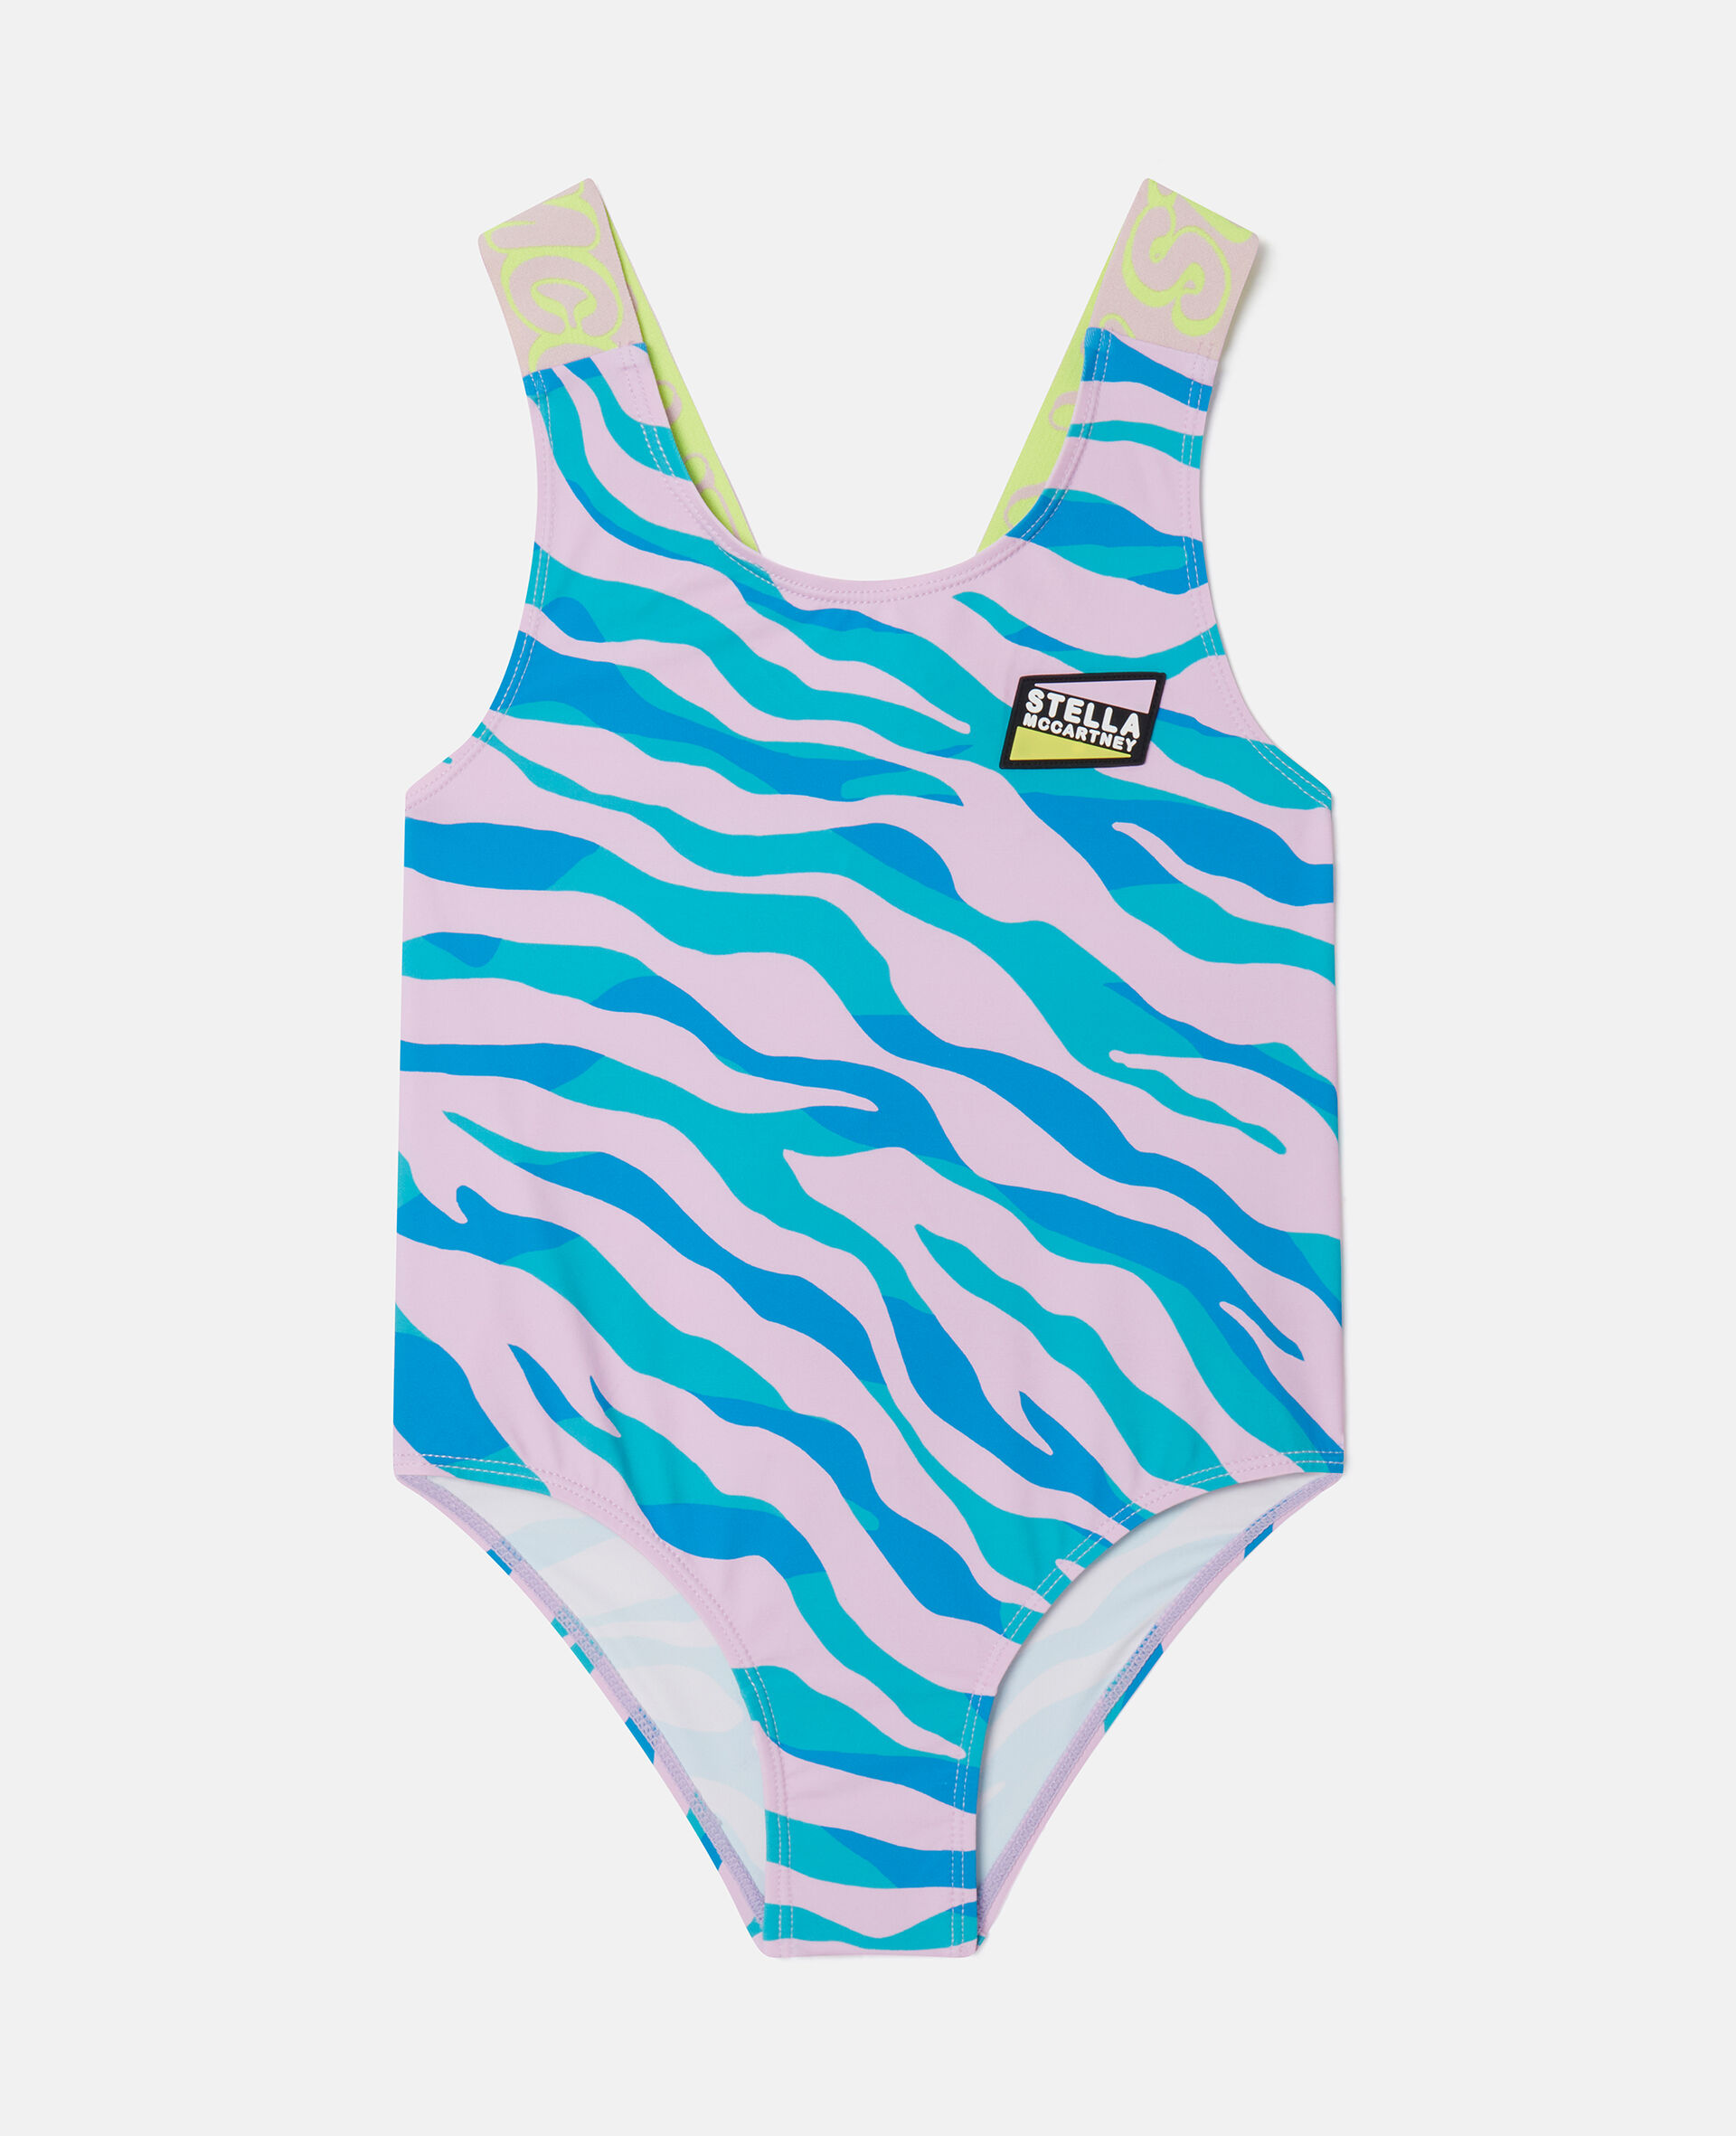 Zebra Print Swimsuit-Fantaisie-medium